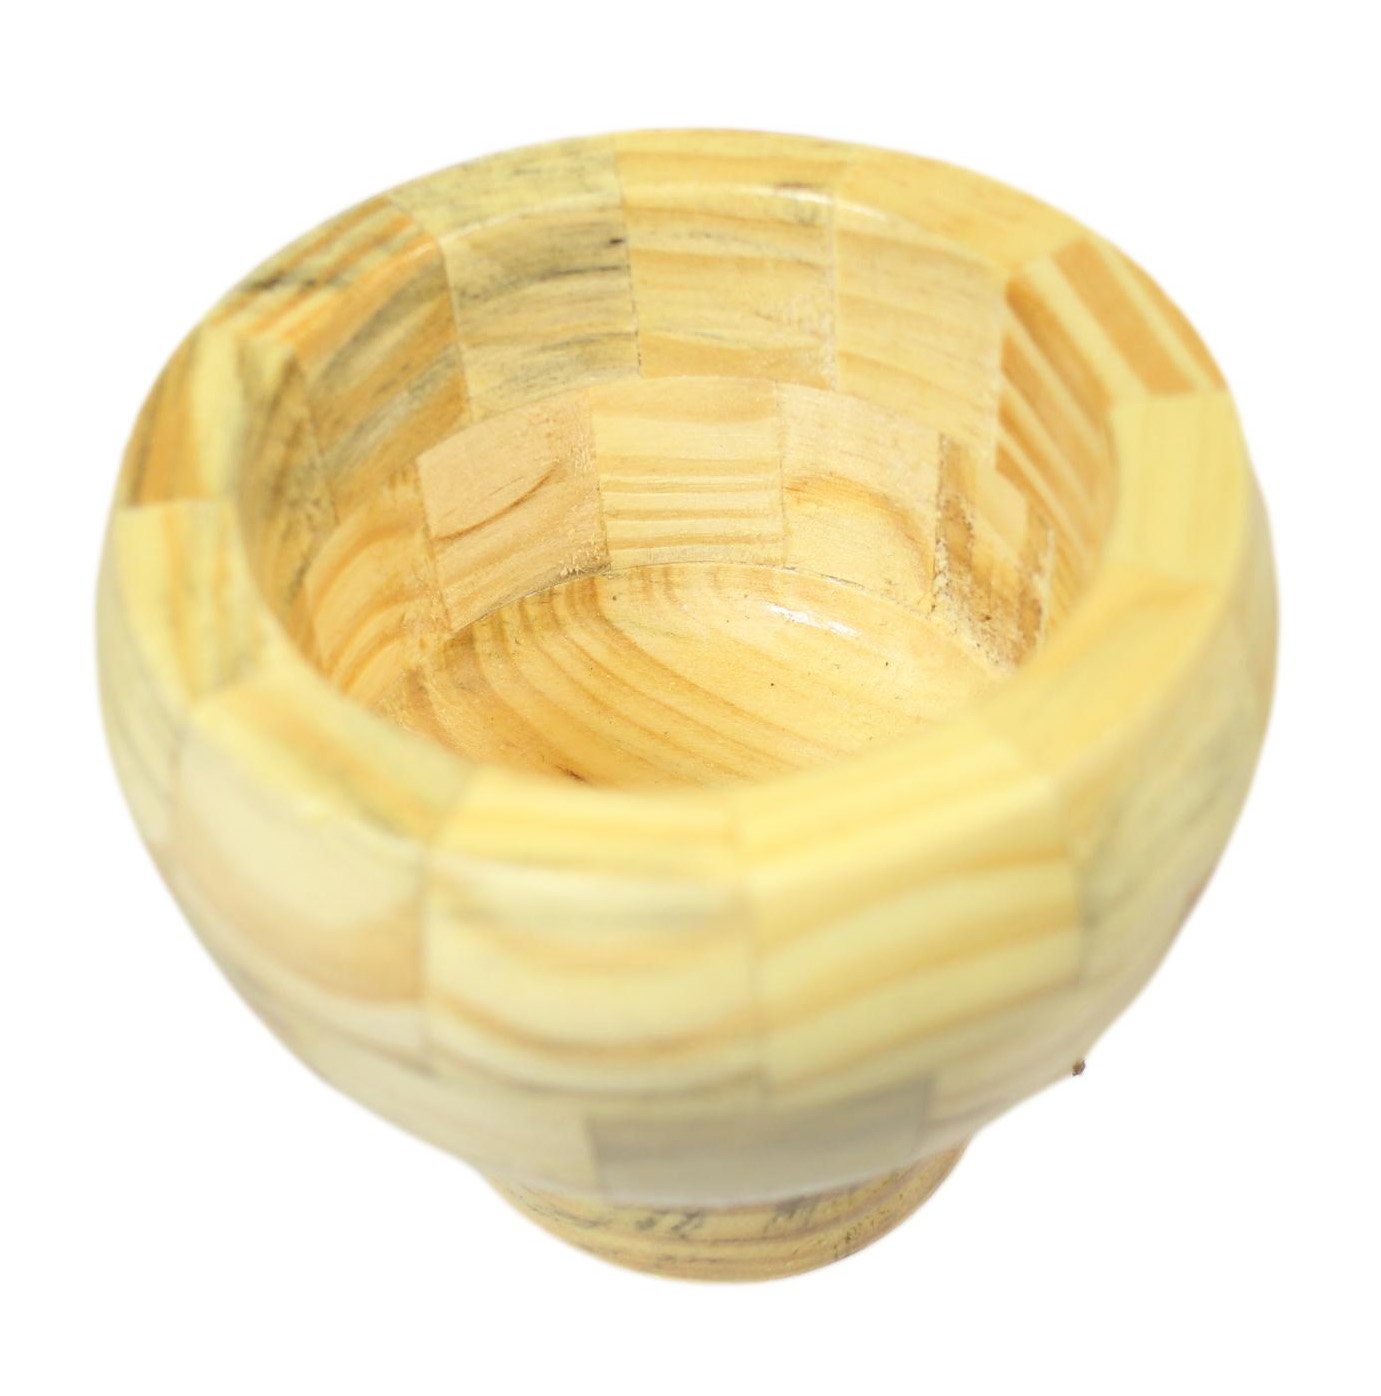 Wooden Round Pestle & Mortar Grinding Crushing Mixing Pesto Pastes Hummus 1 piece  1500 (Parcel Rate)